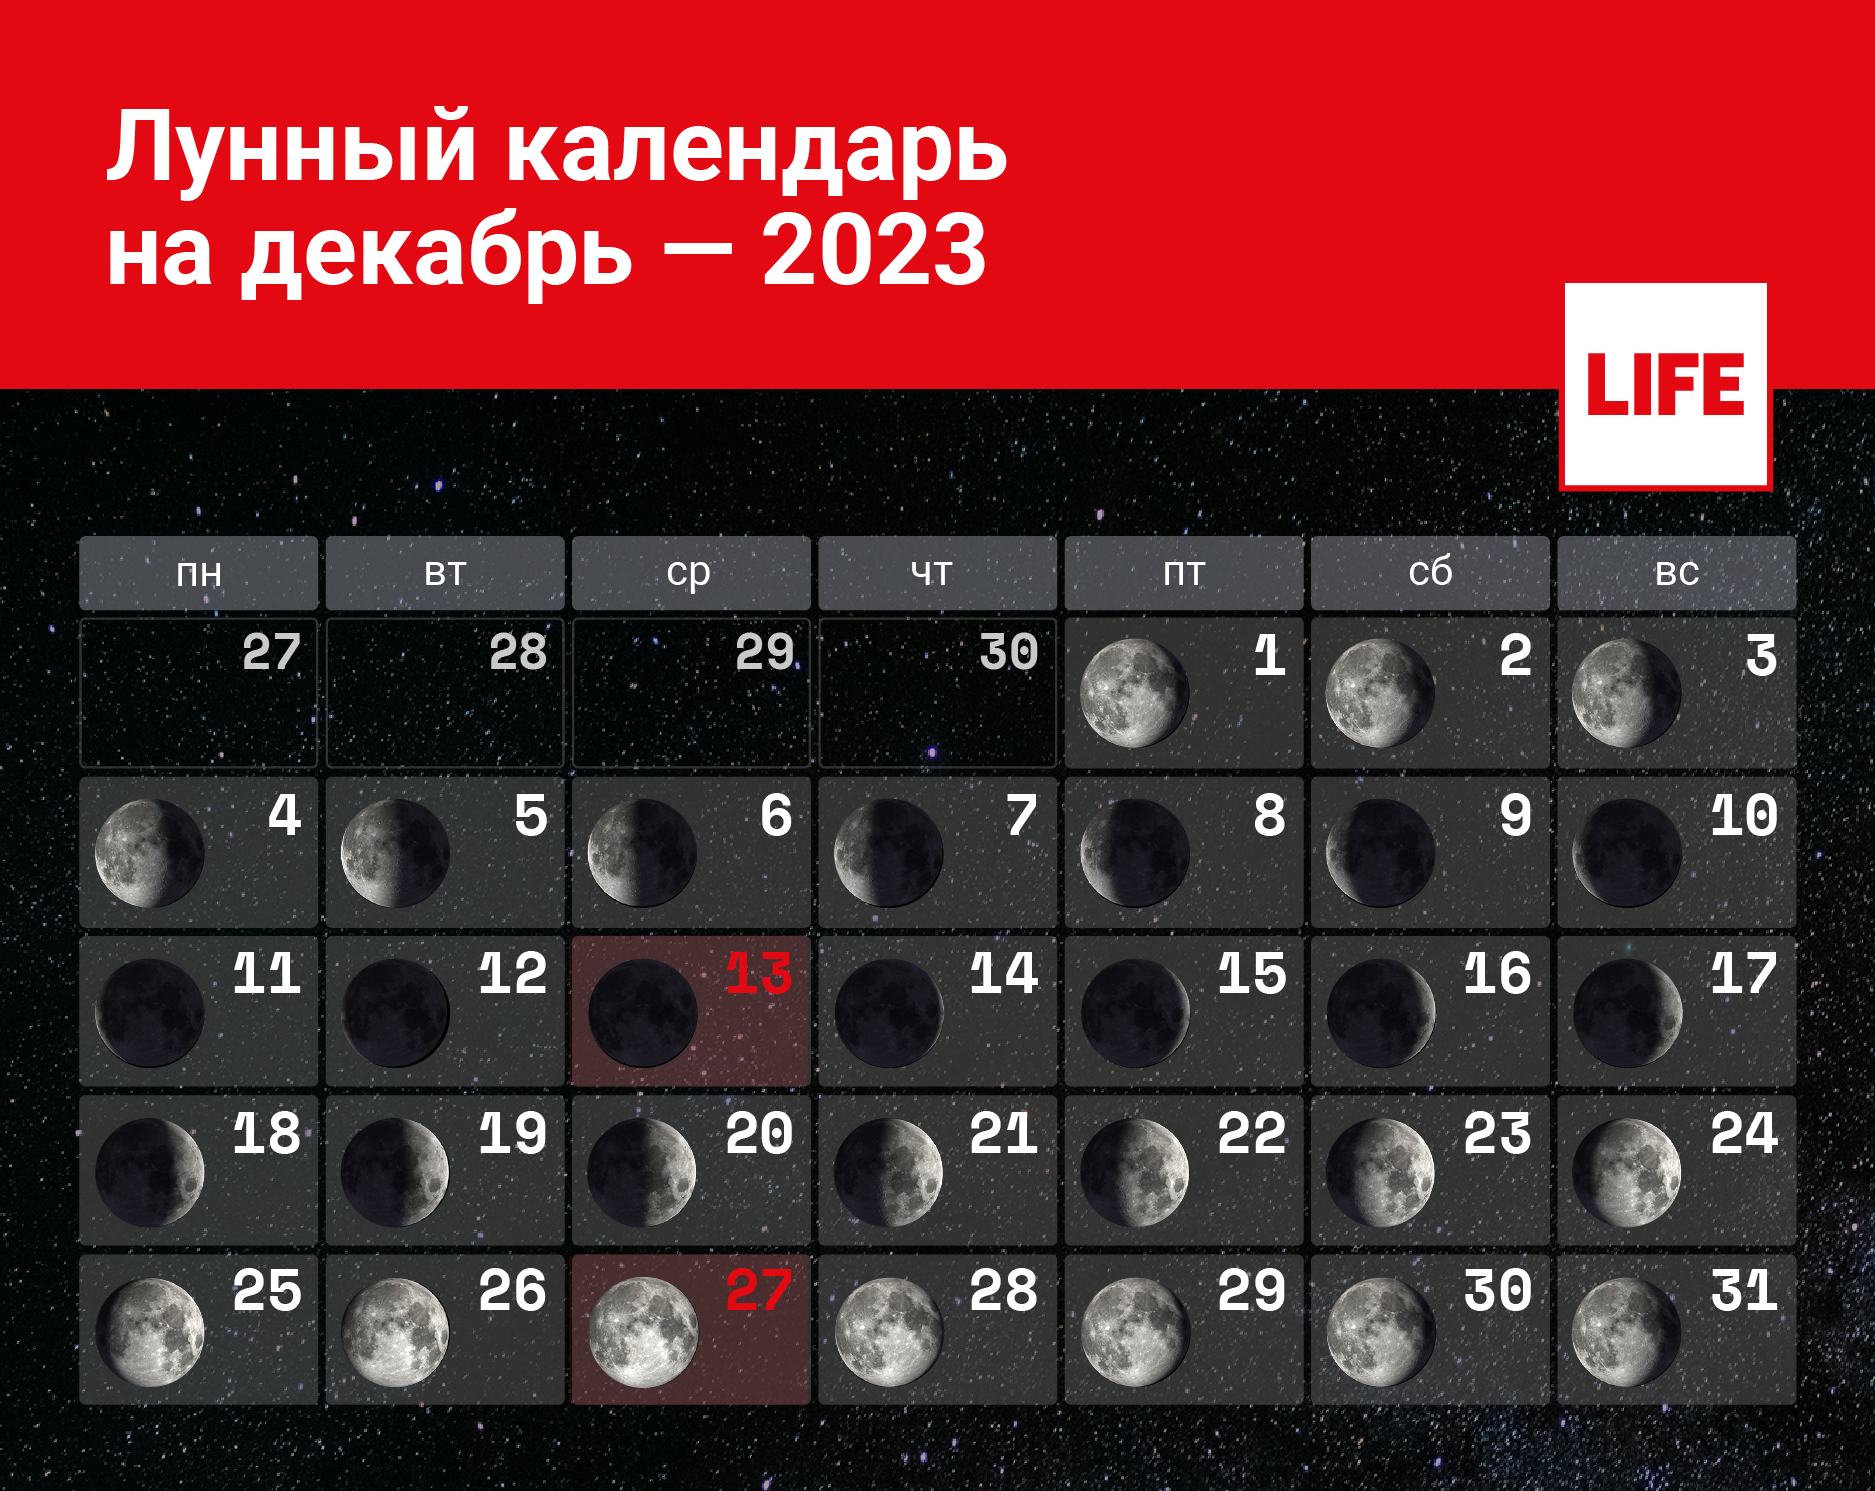 Лунный календарь на декабрь 2023 года: благоприятные и неблагоприятные дни,  календарь стрижек